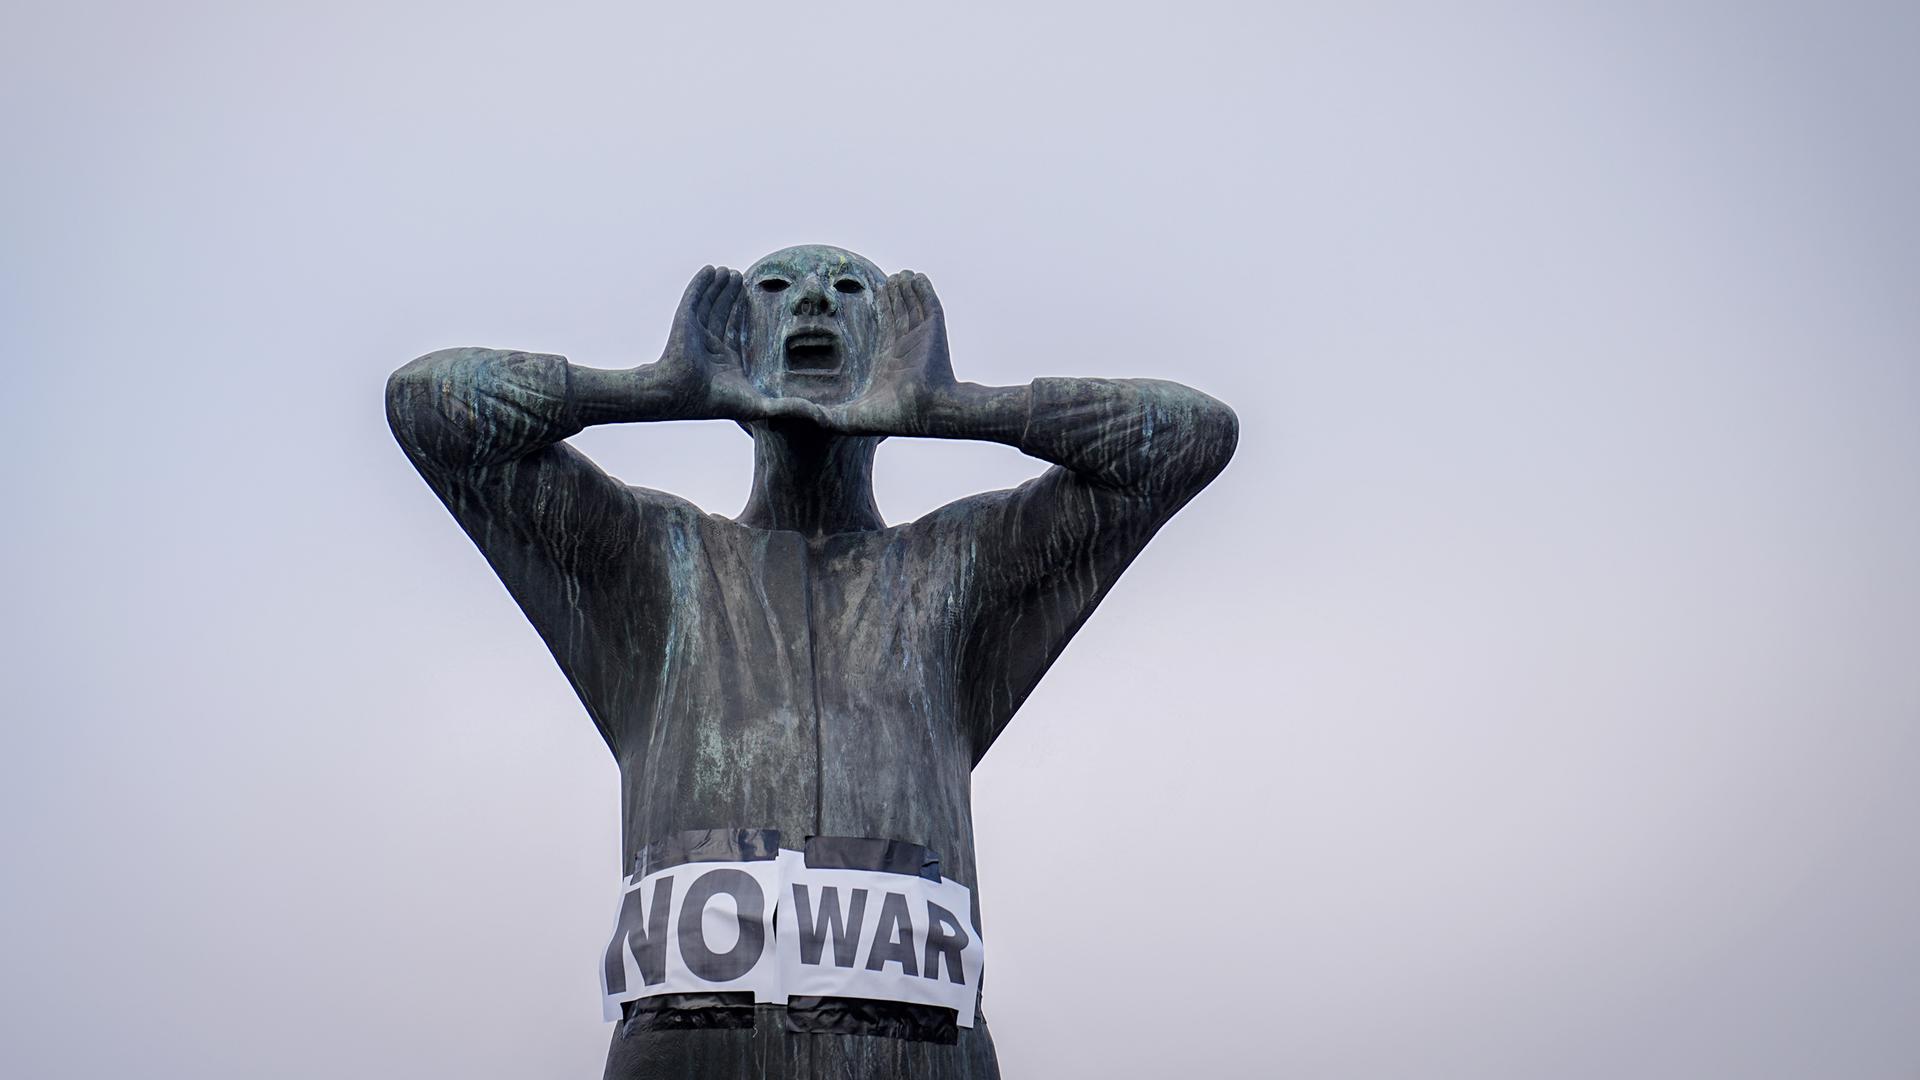 Plakate mit der Aufschrift "No war" kleben an einer männlichen Bronzefigur, deren Händen am weit geöffenet Mund plaziert sind.